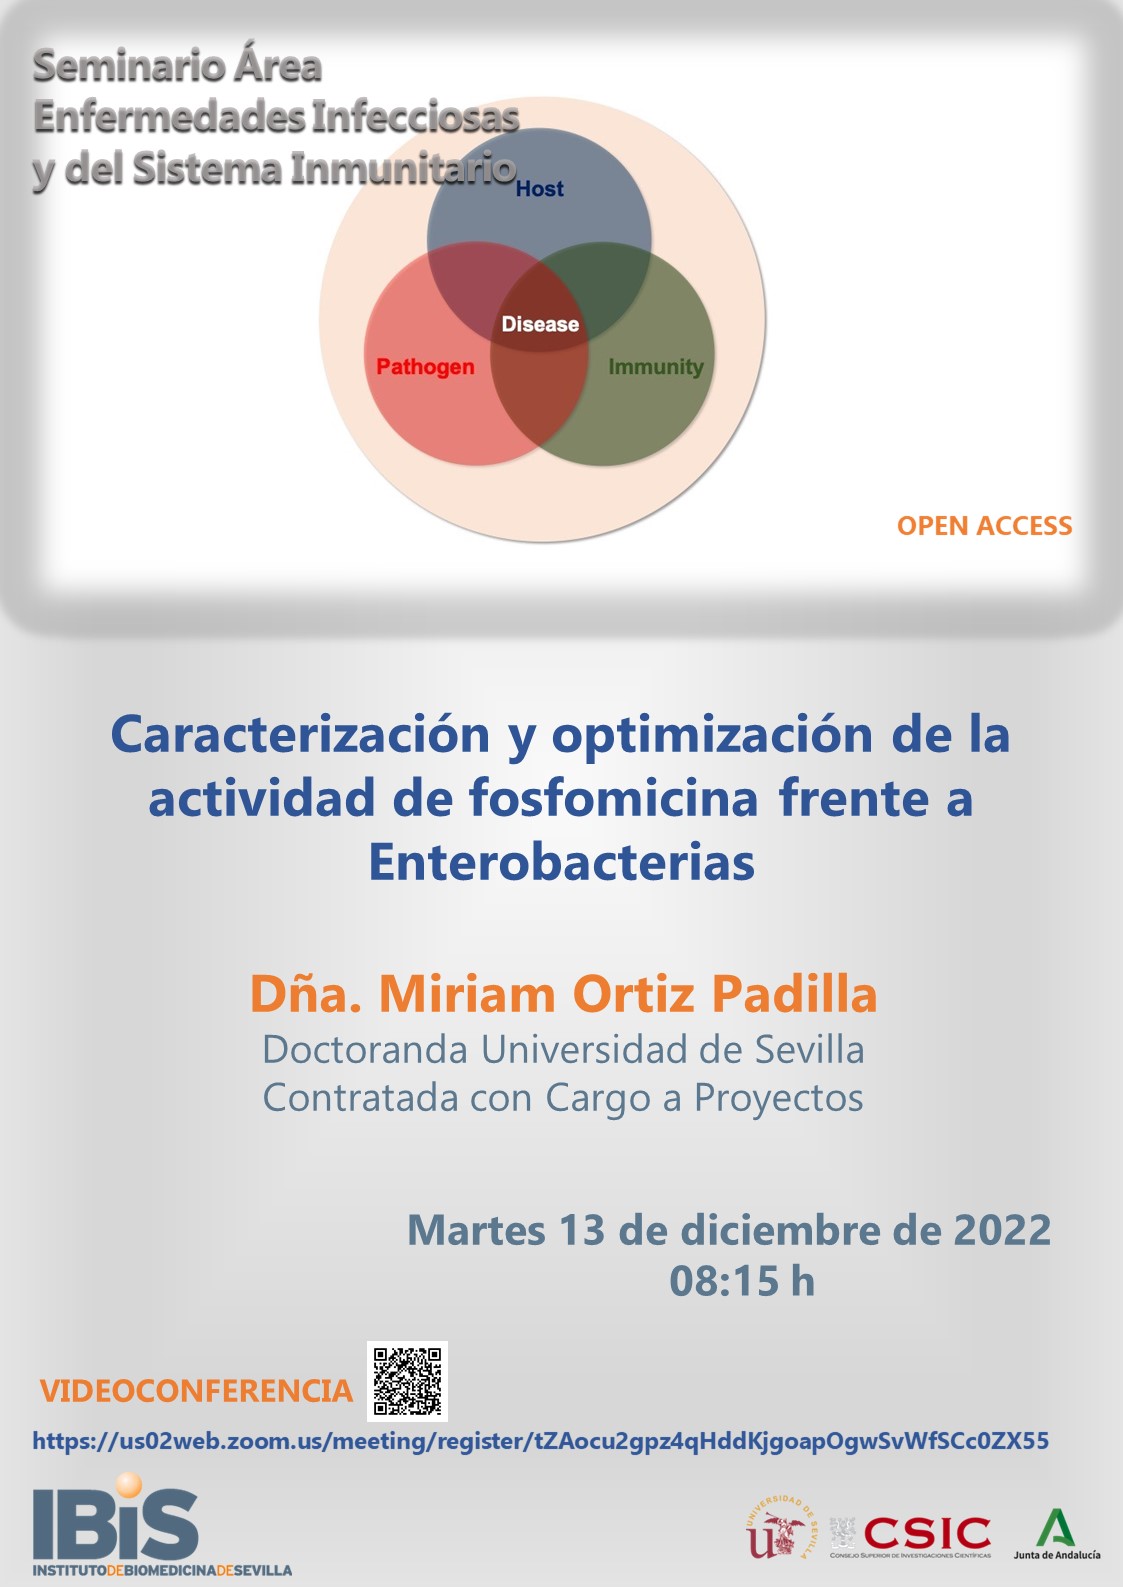 Poster: Caracterización y optimización de la actividad de fosfomicina frente a Enterobacterias